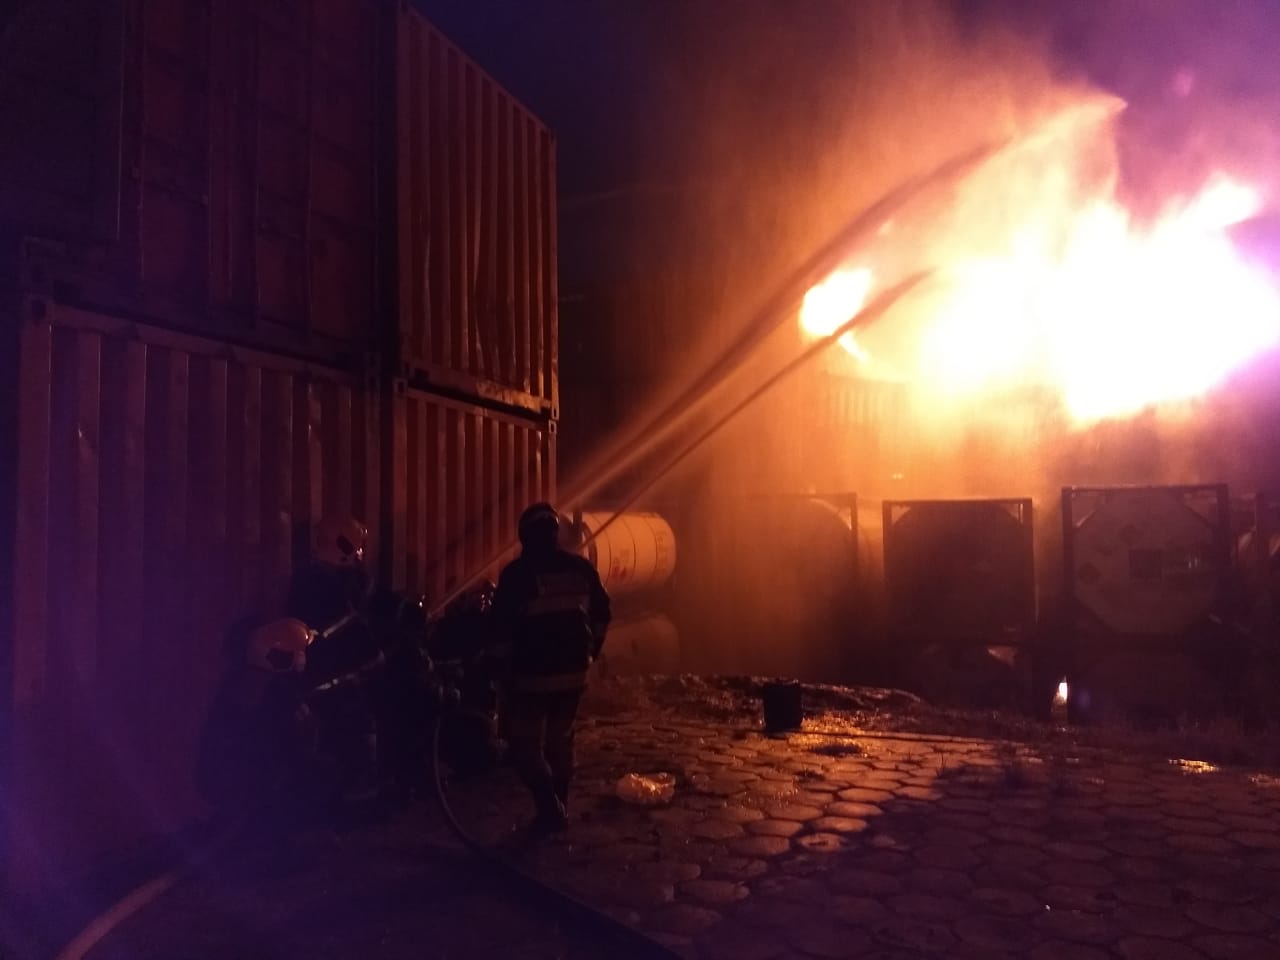 Mais de 30 contêineres estão em risco de incêndio; 15 foram destruídos pelo fogo. Veja mais vídeos